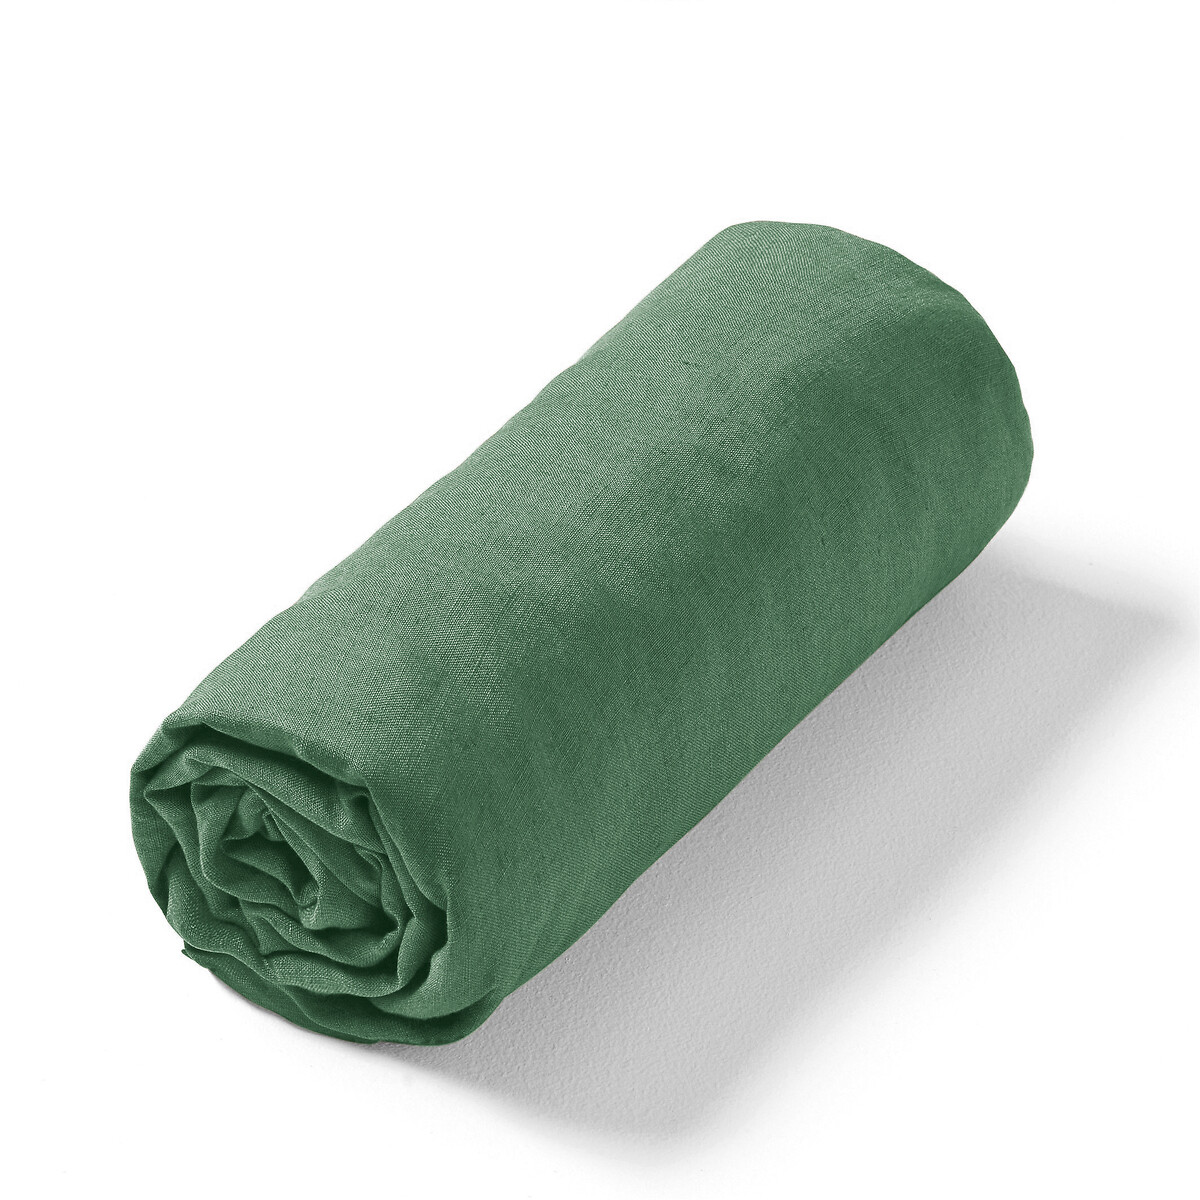 Простыня натяжная из стираного льна Elina для толстых матрасов 140 x 190 см зеленый простыня натяжная из льна и хлопка lior 140 x 190 см зеленый